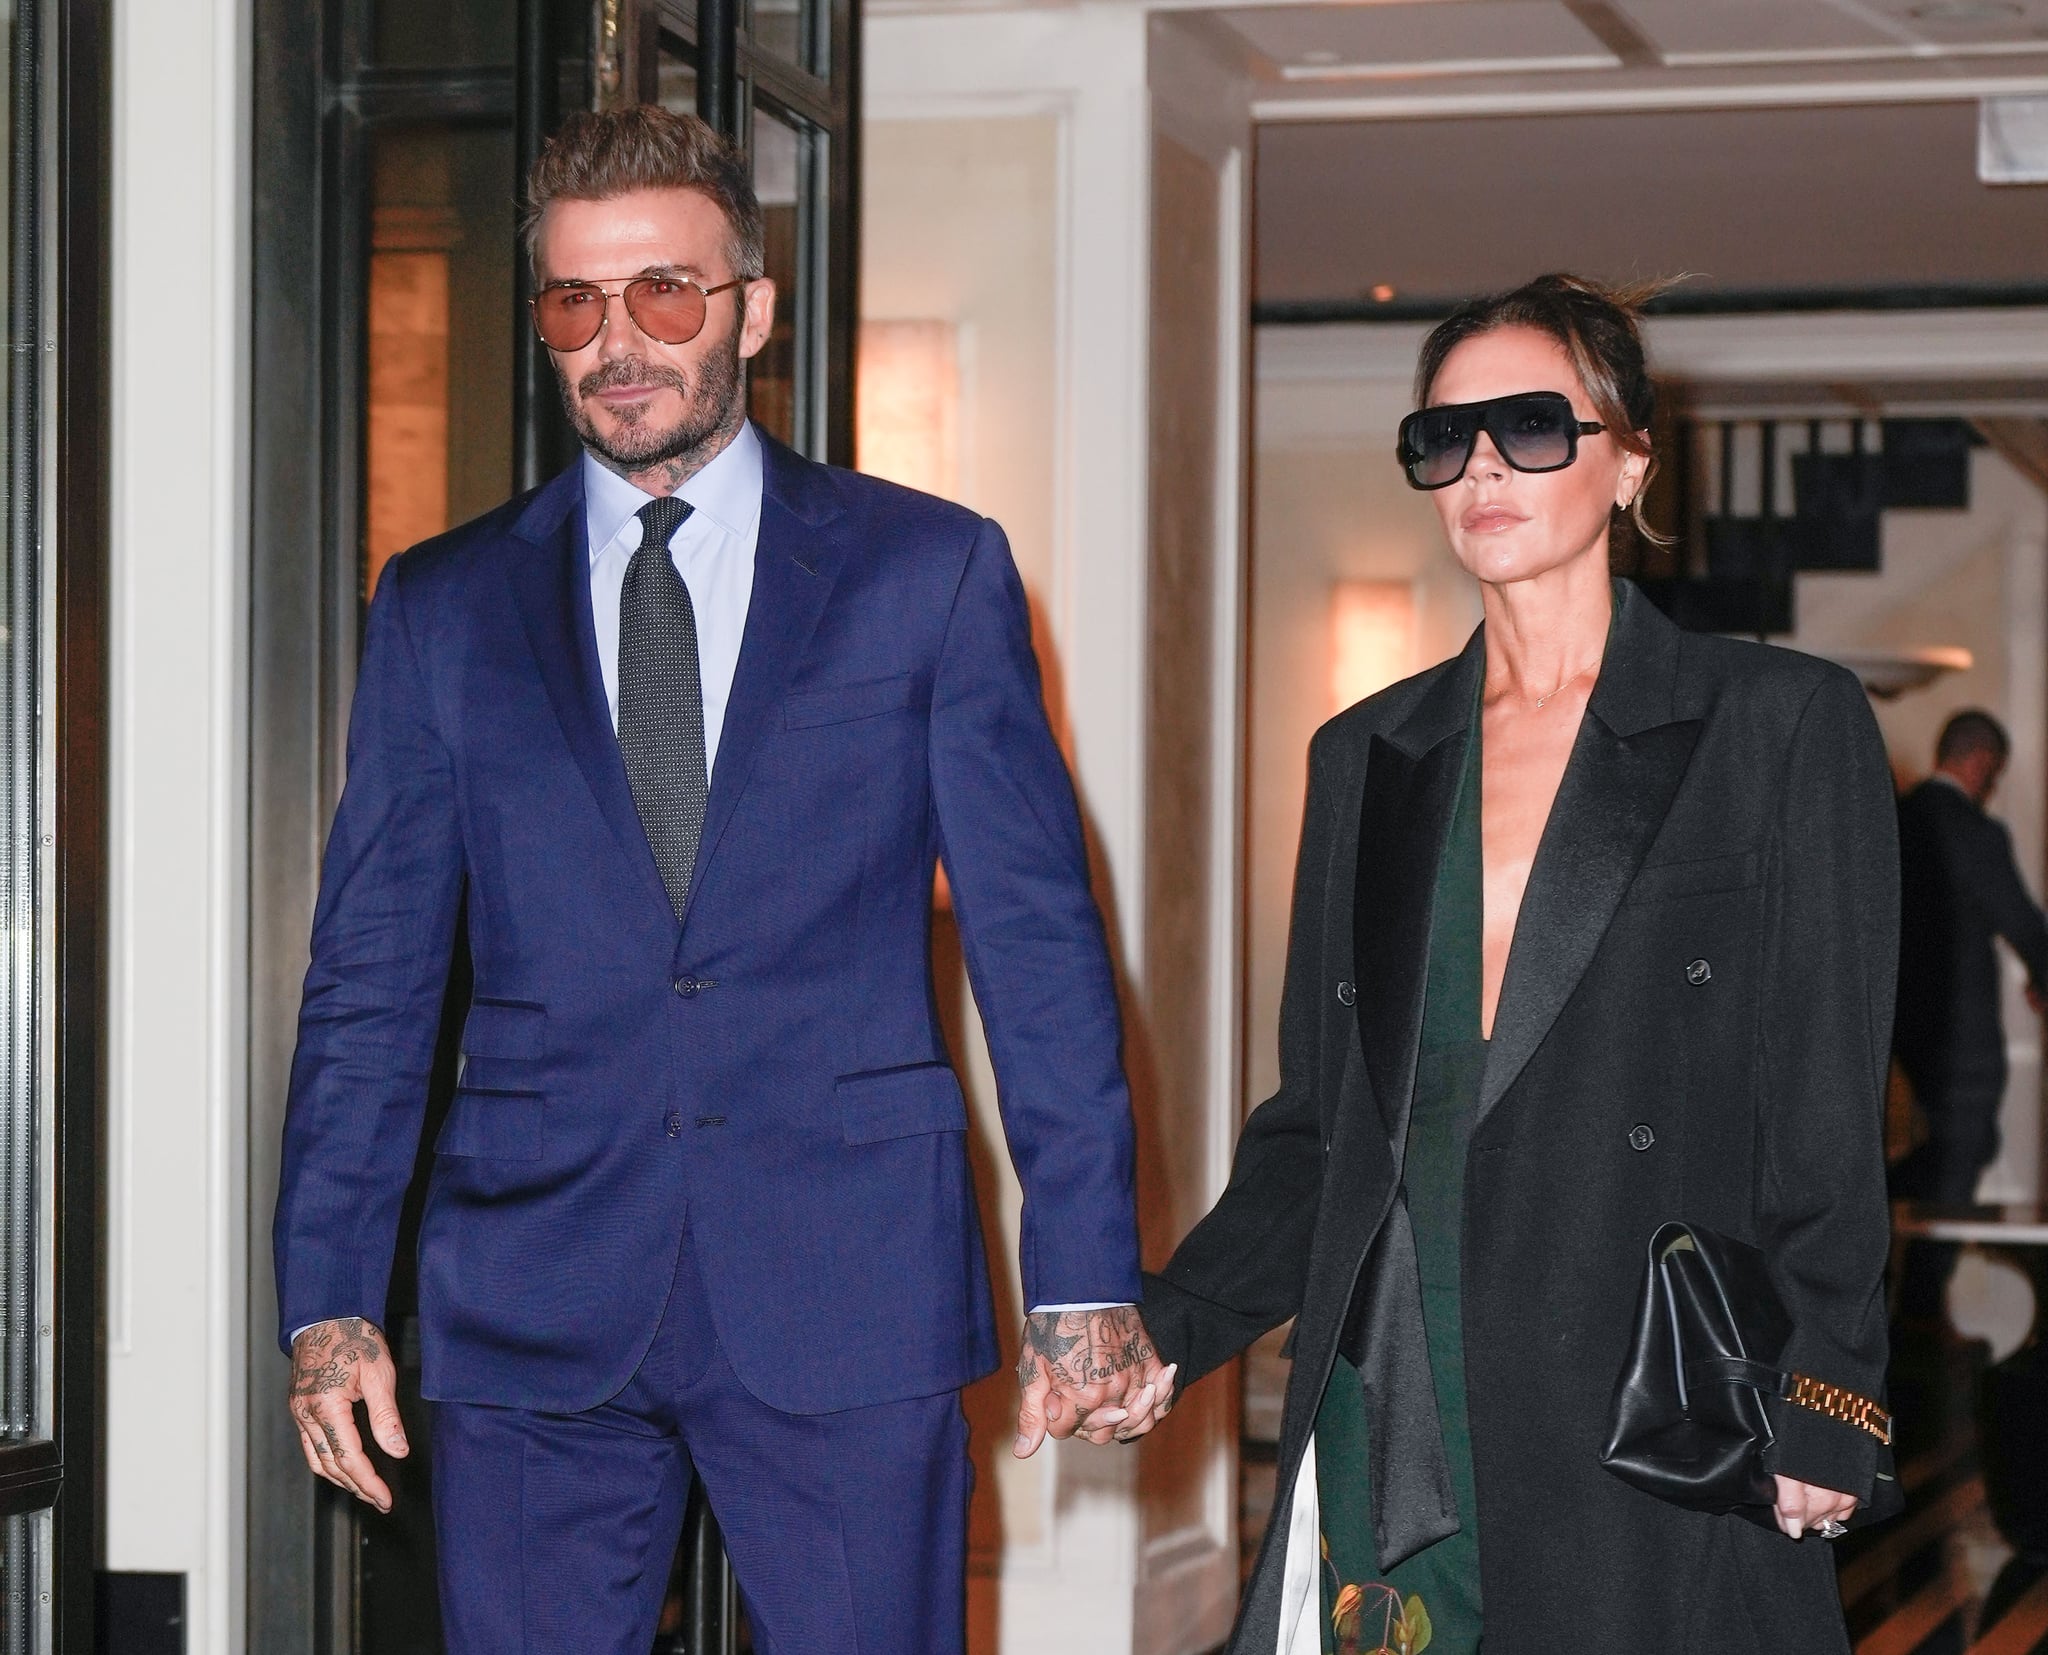 NEW YORK, NEW YORK – 11. OKTOBER: David Beckham und Victoria Beckham werden am 11. Oktober 2022 in New York City gesehen.  (Foto von Gotham/GC Images)